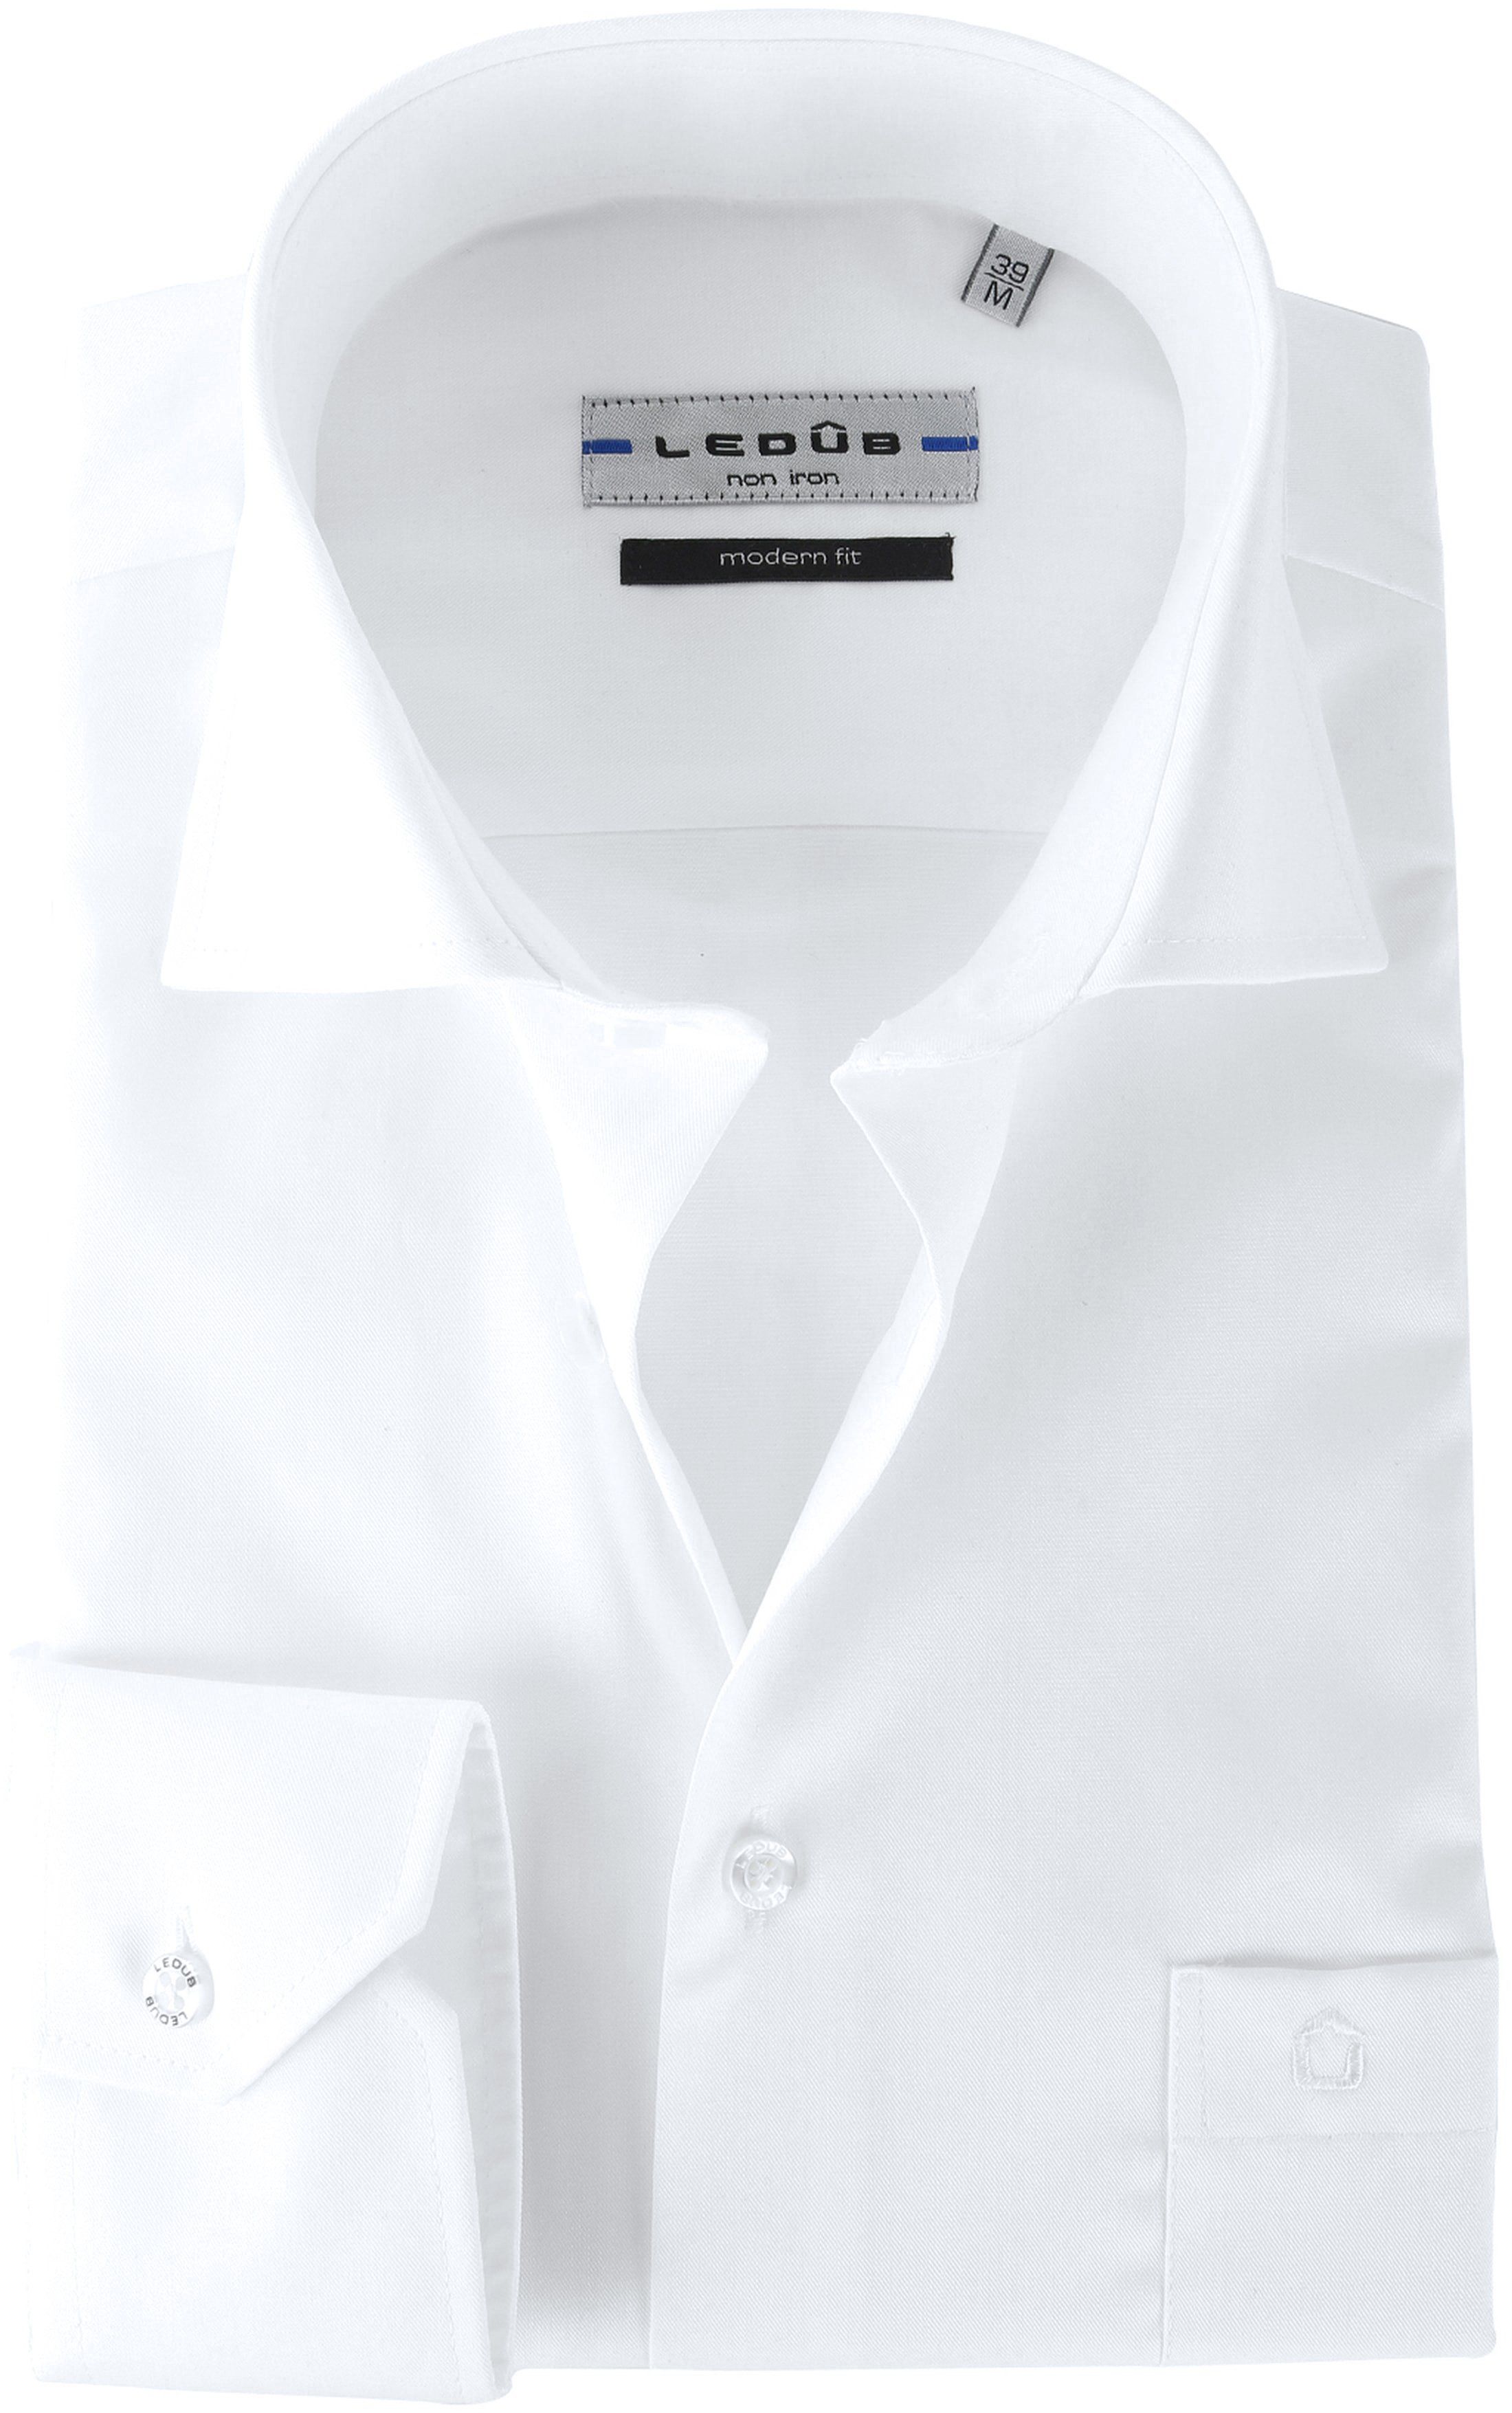 Ledub Shirt Non Iron White size 15